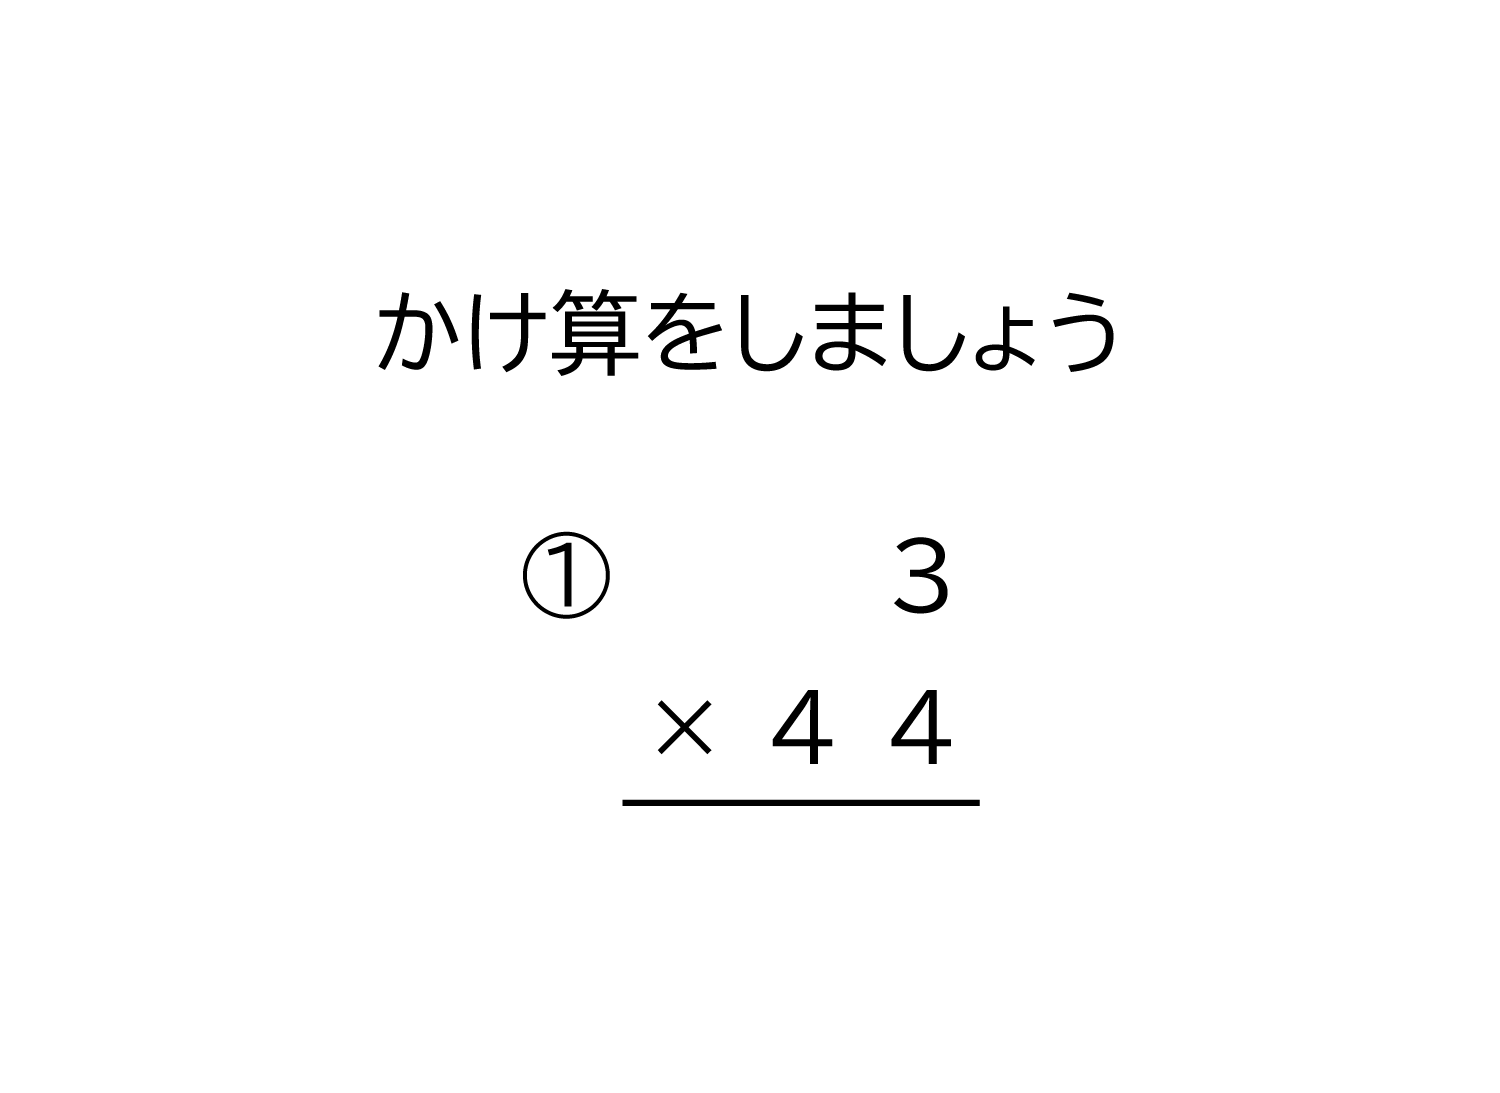 1桁×2桁の繰り上がりの有る掛け算の筆算